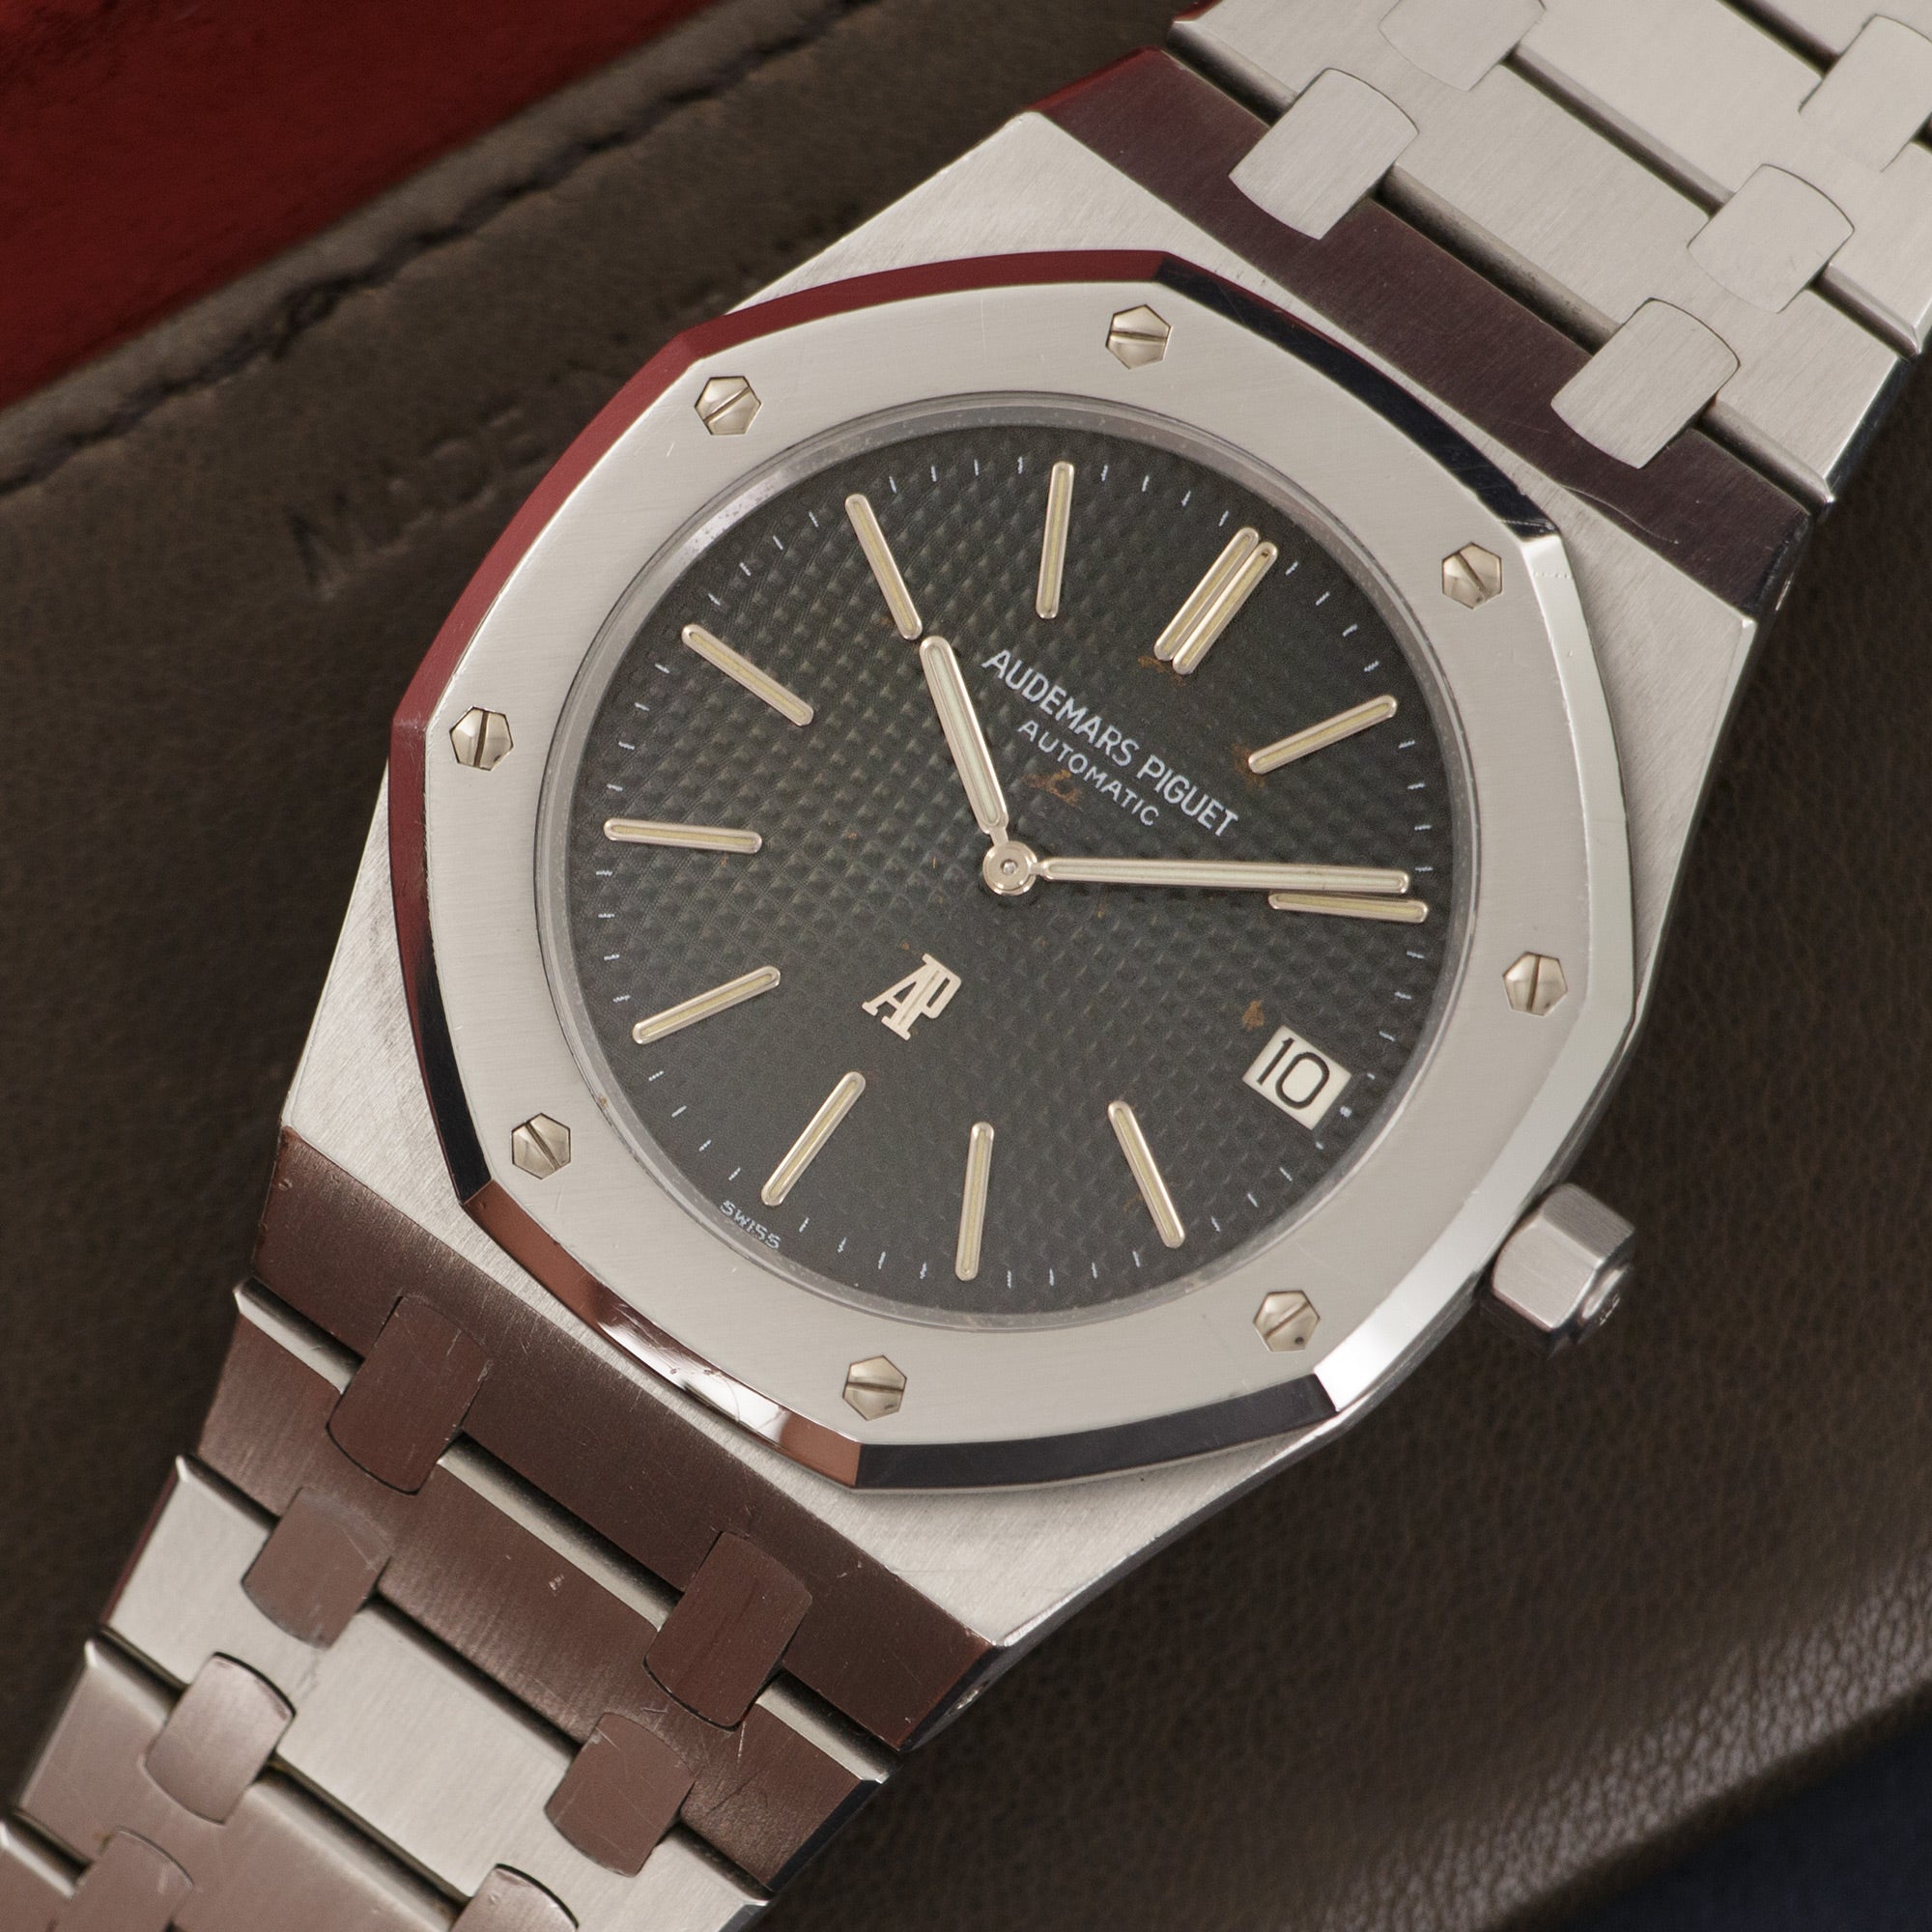 Audemars Piguet - Audemars Piguet Royal Oak Jumbo C-Series Watch Ref. 5402 - The Keystone Watches